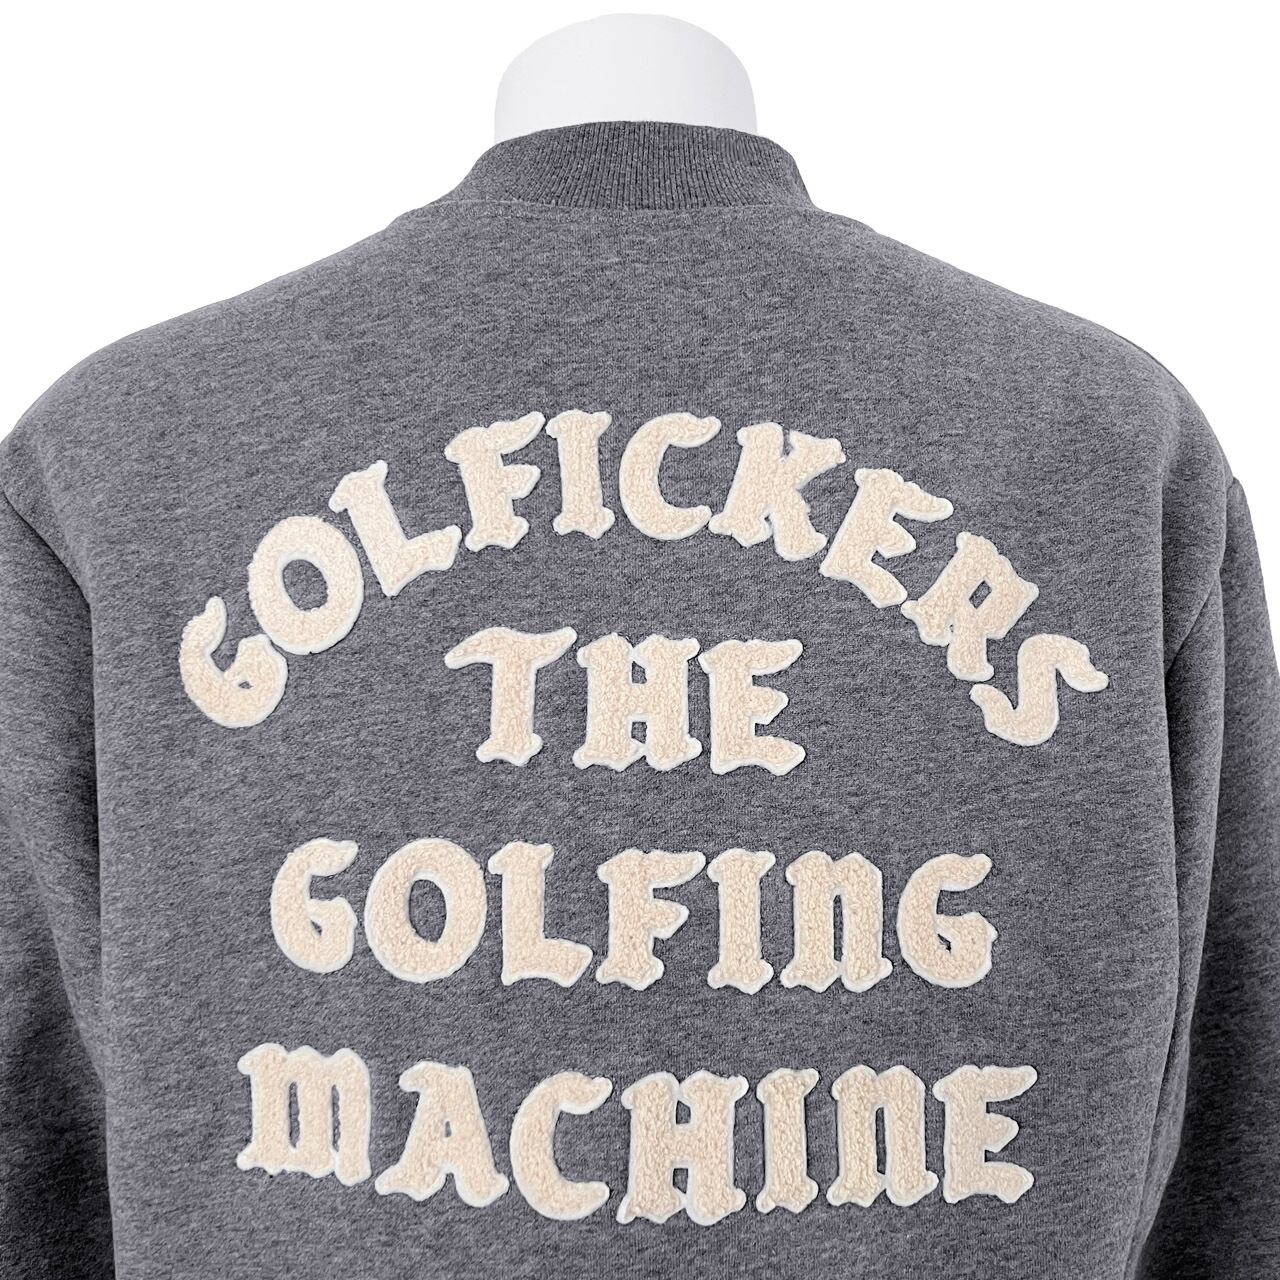 36％割引ブラック系大人気の ゴルフィッカーズ Golfickers タートルネック仕様のスウェット その他 ゴルフブラック系-OTA.ON